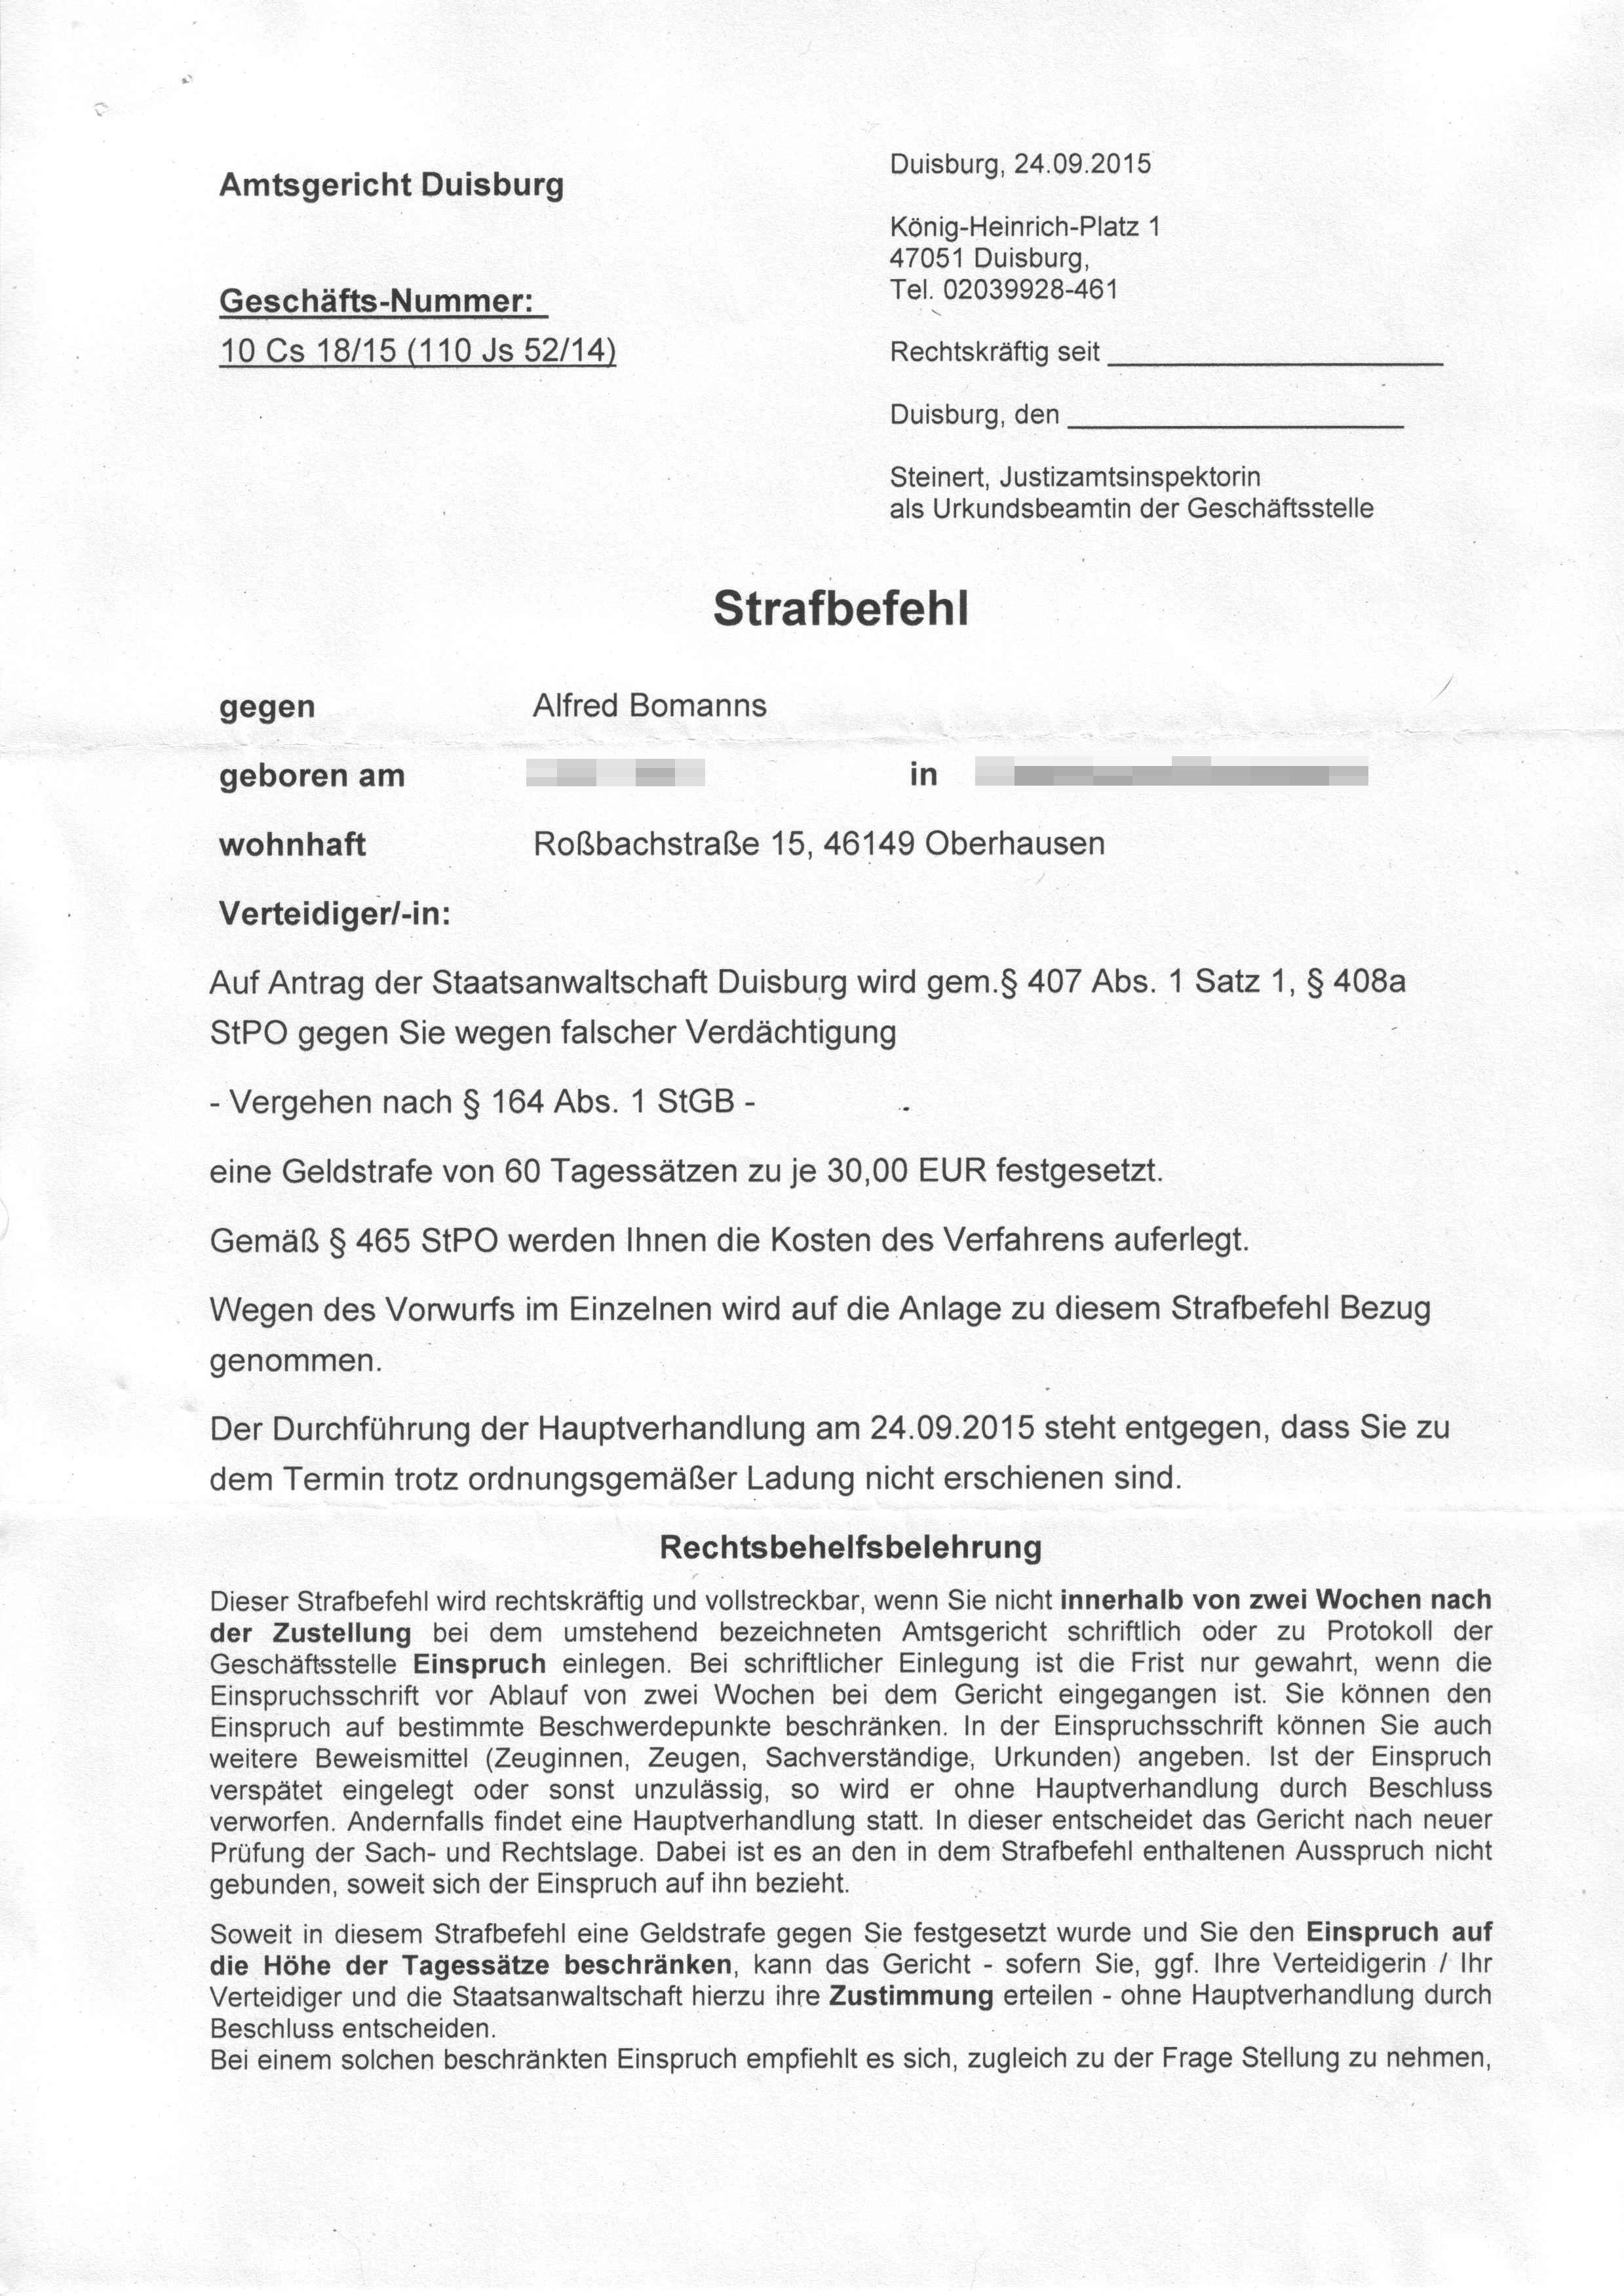 Strafbefehl des Amtsgerichts Duisburg vom 24.09.2015, Richterin Rita Bohle, S. 1